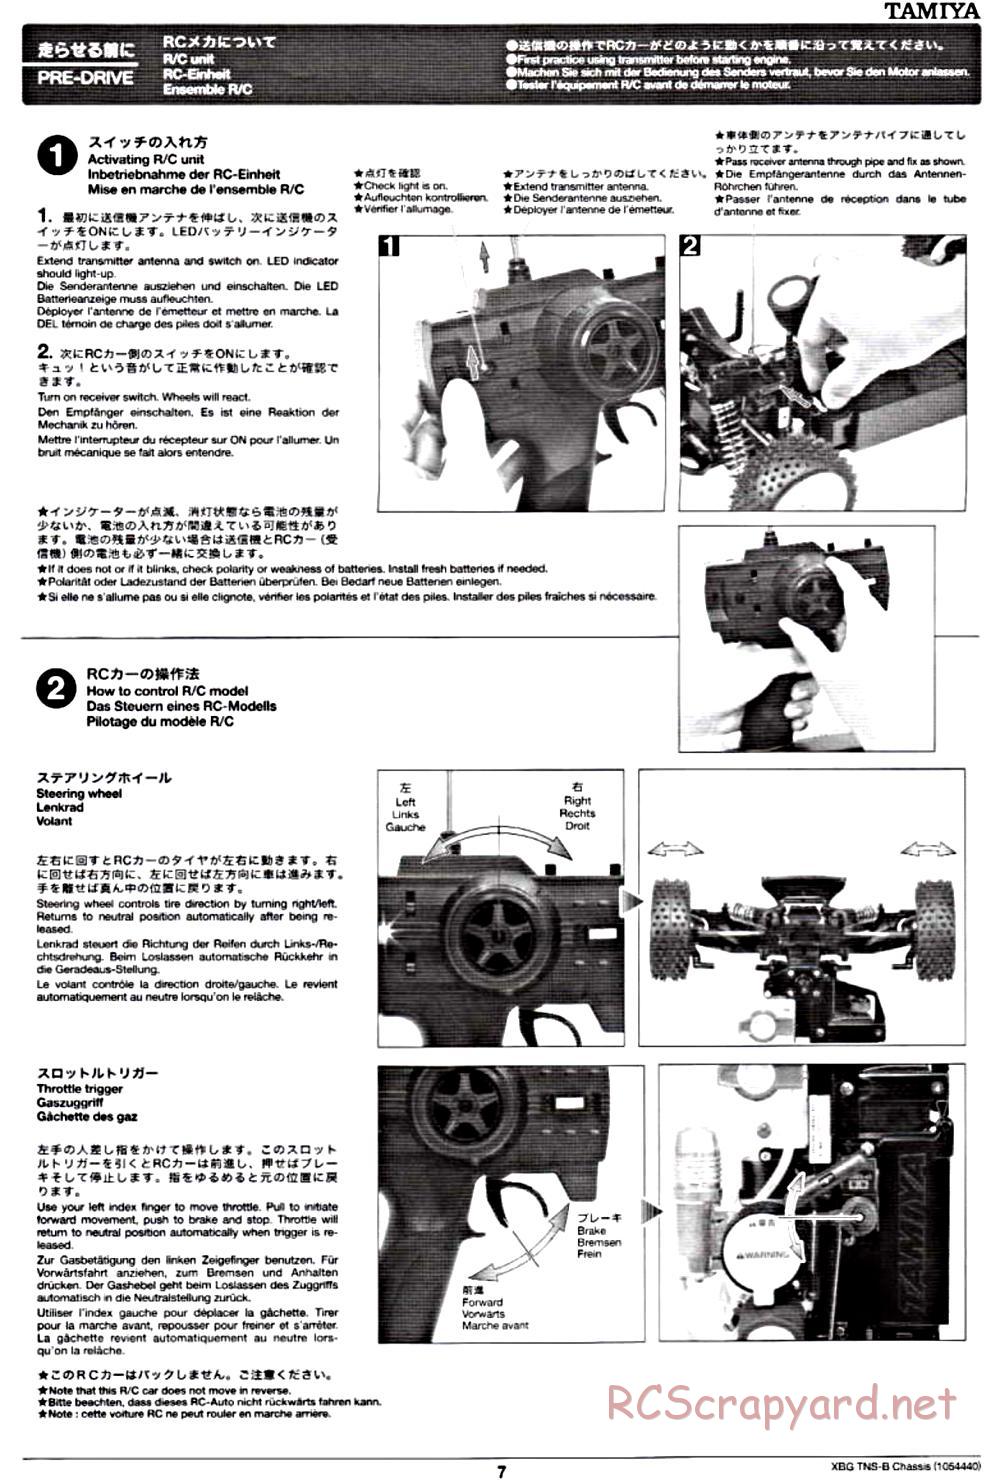 Tamiya - TNS-B Chassis - Manual - Page 7